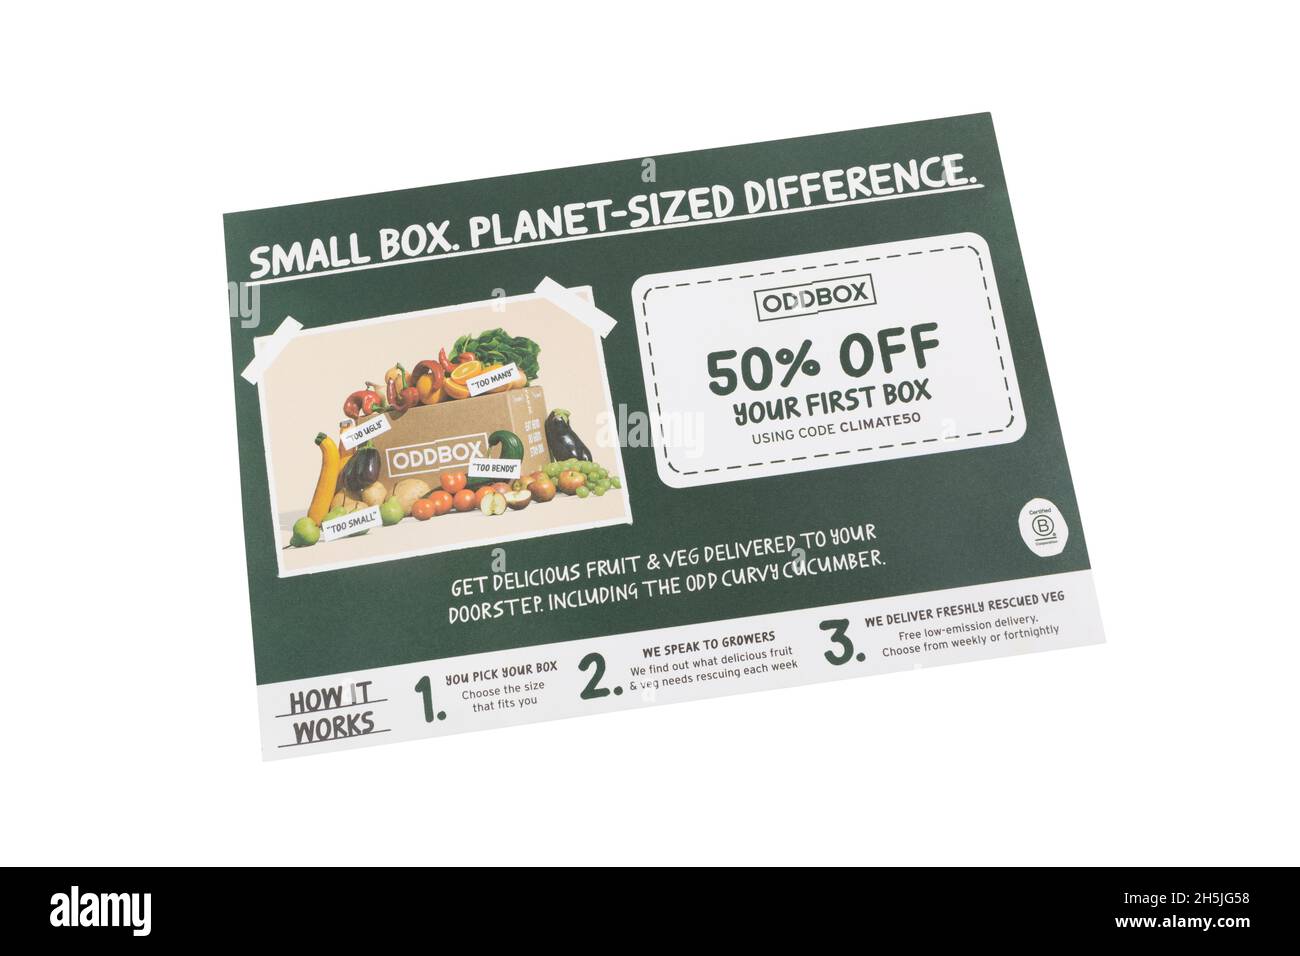 Offerta sconto del 50% su Oddbox per frutta fresca e verdura Foto Stock